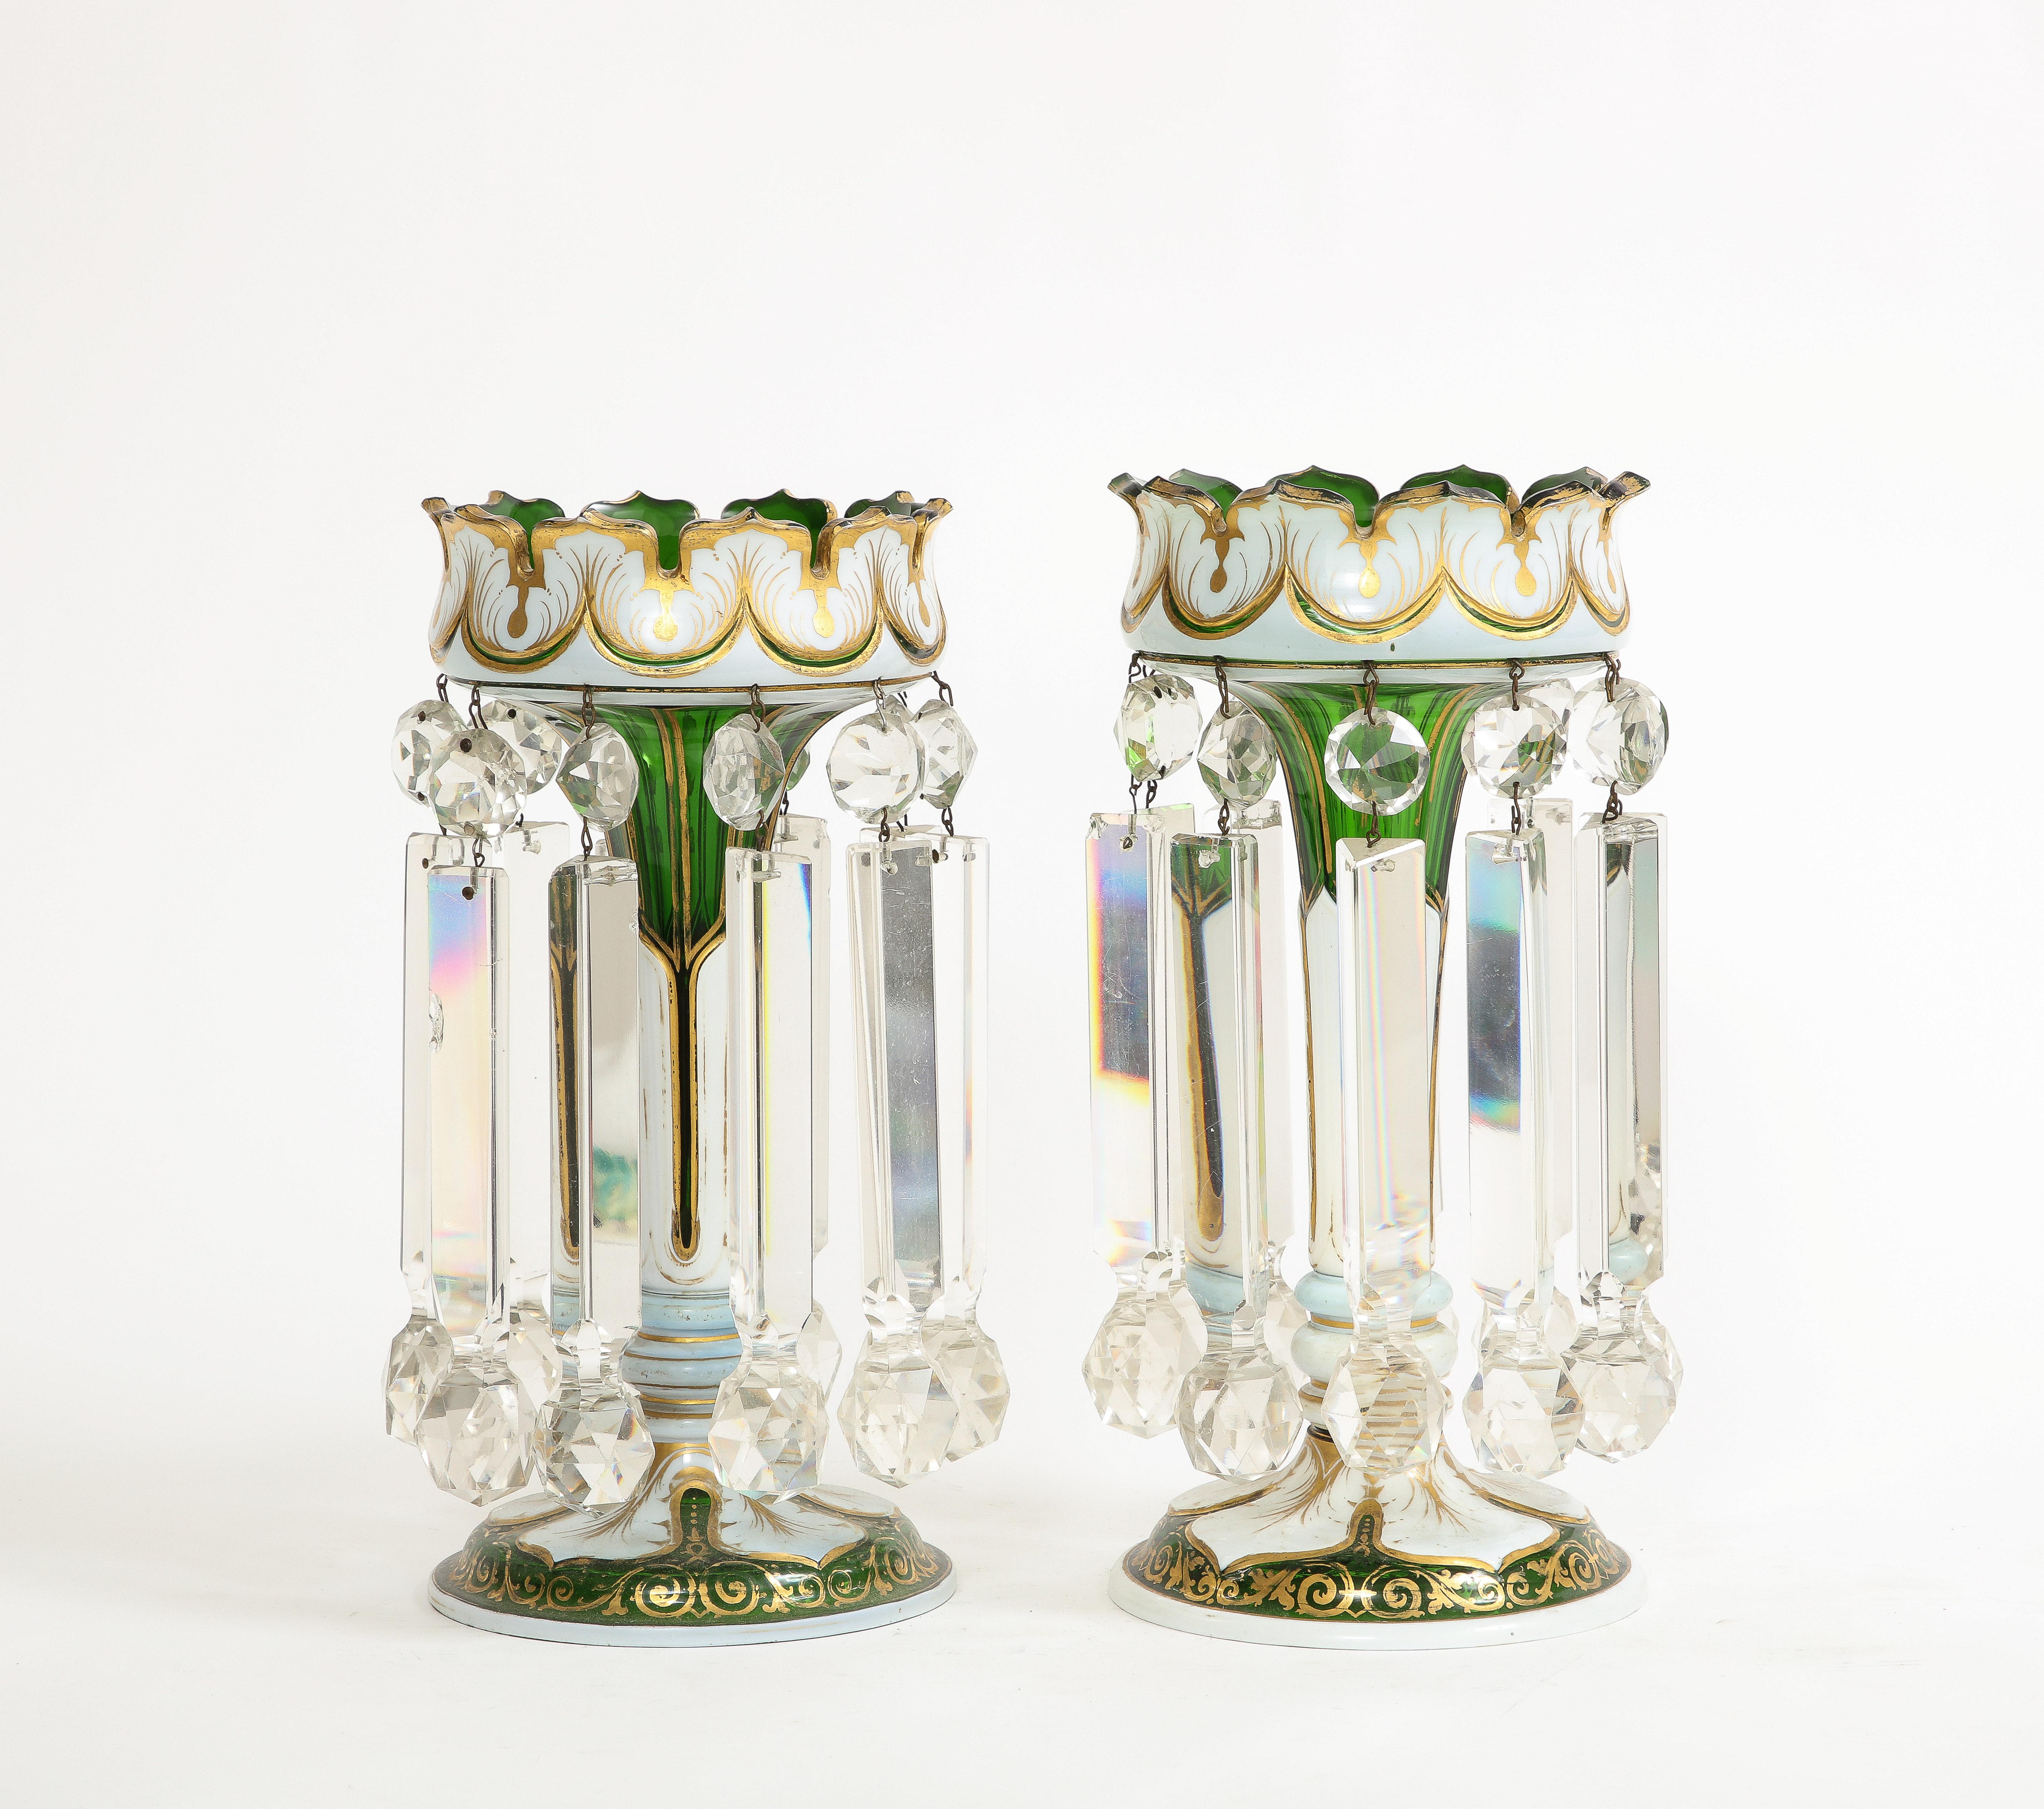 Une très belle paire d'objets anciens de Baccarat à double recouvrement,  Coupe du blanc au vert  Lustres en cristal / Girondins, attribués à Baccarat . Cette paire de lustres en cristal blanc sur vert est un ajout éblouissant et élégant à tout